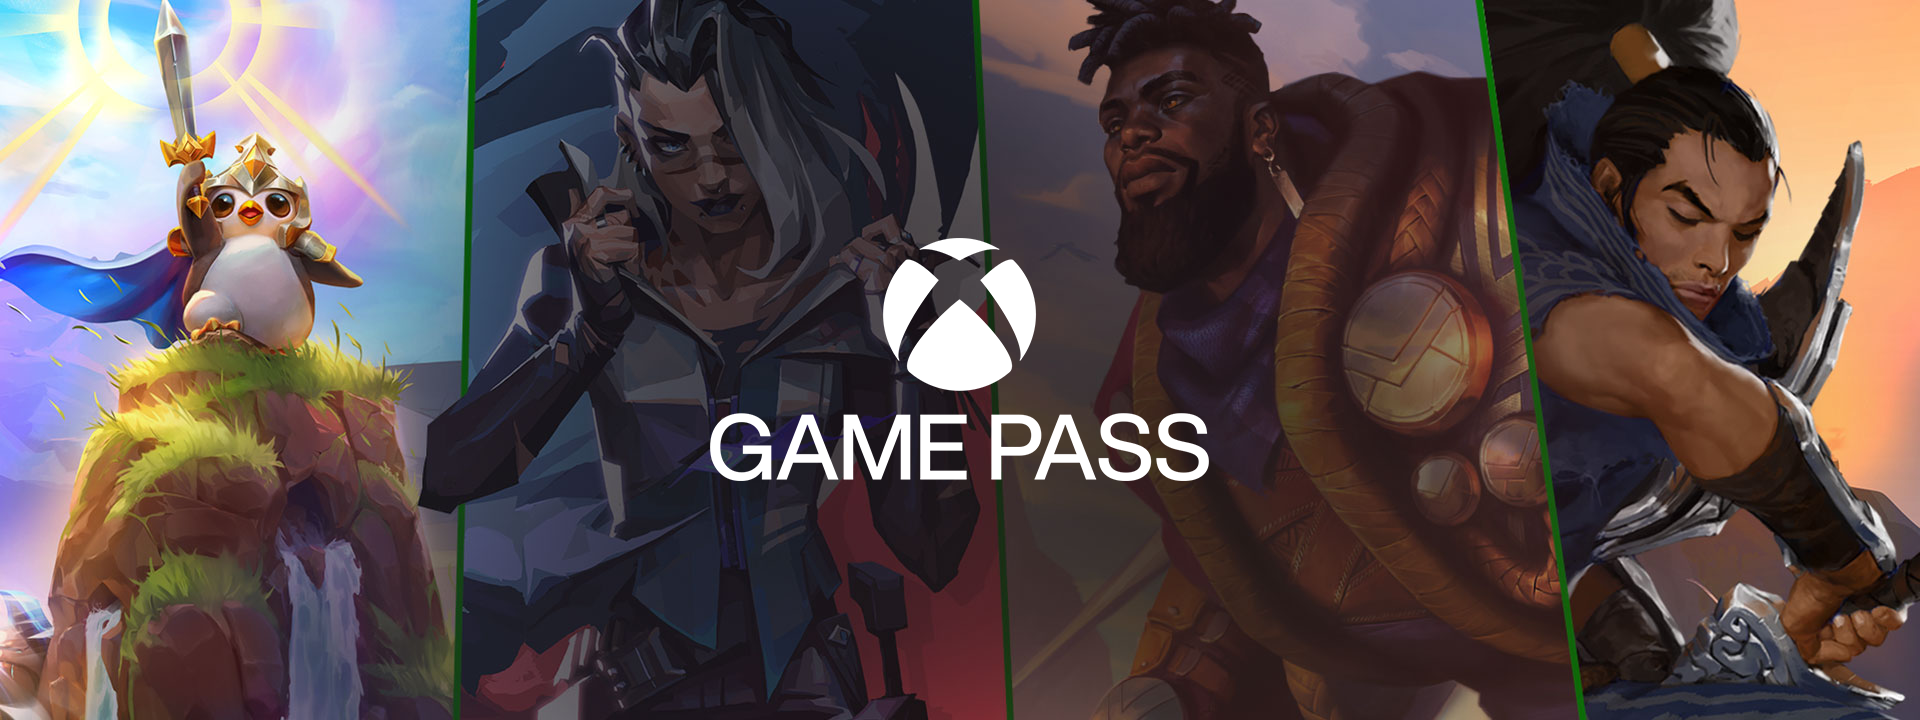 Xbox game pass inida